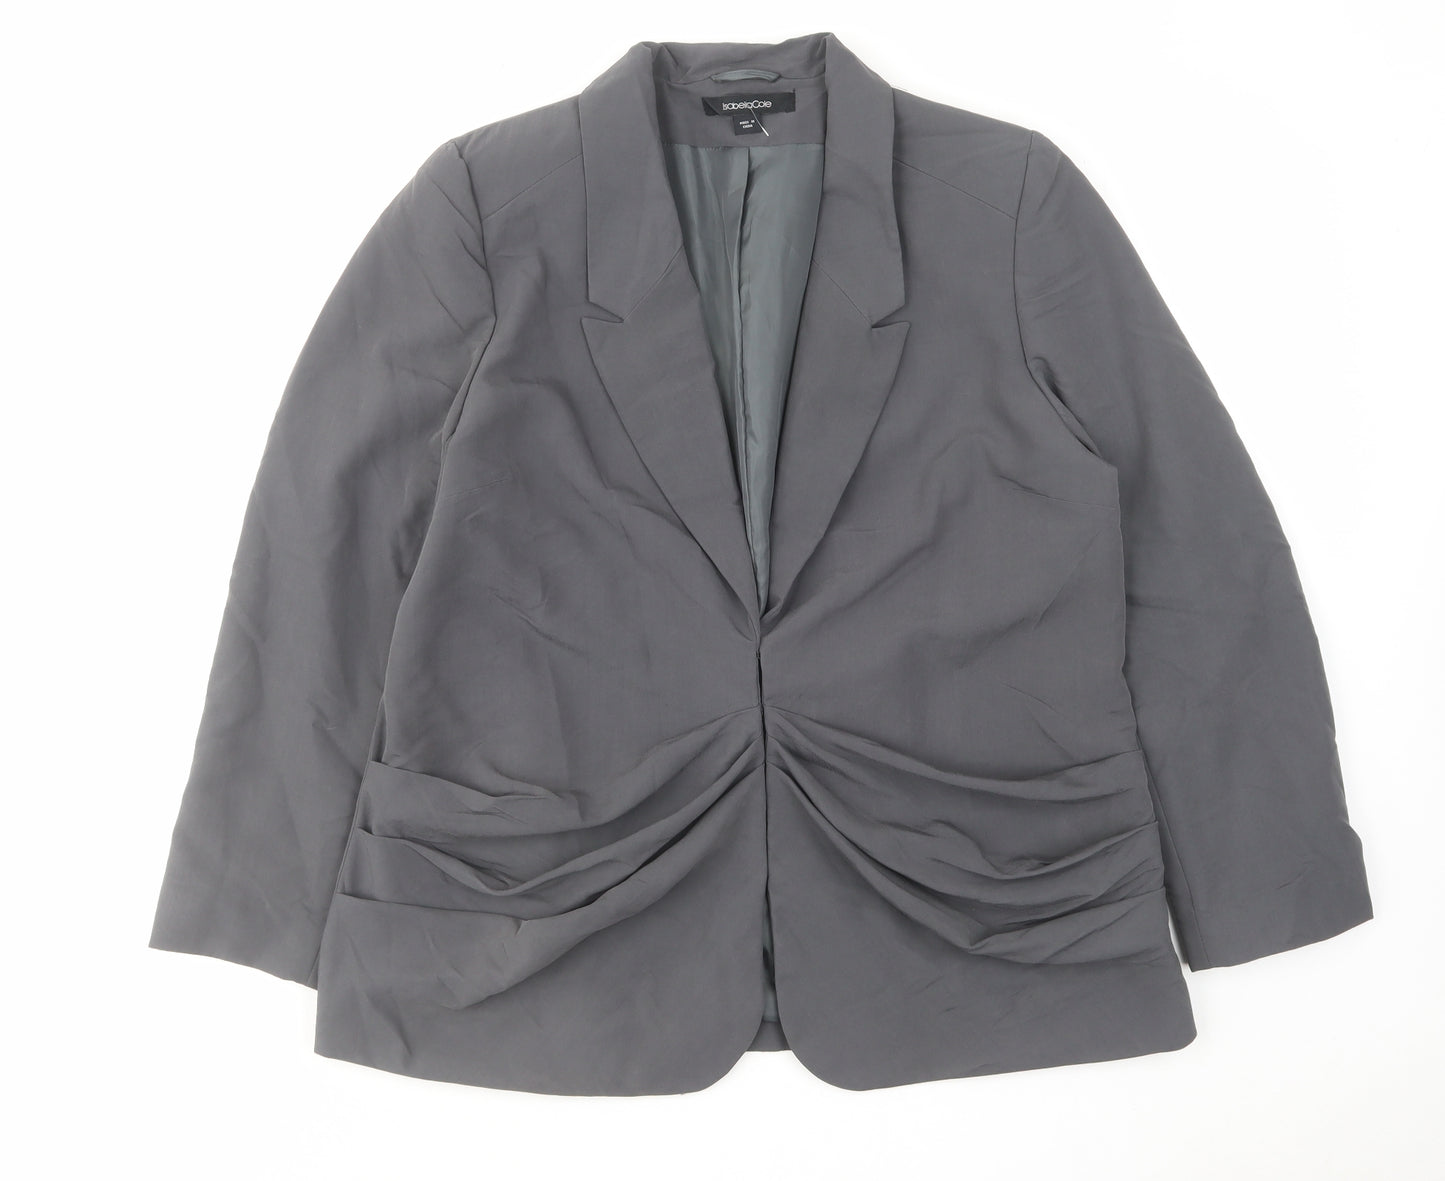 IsabellaCole Womens Grey Jacket Blazer Size 18 Hook & Eye